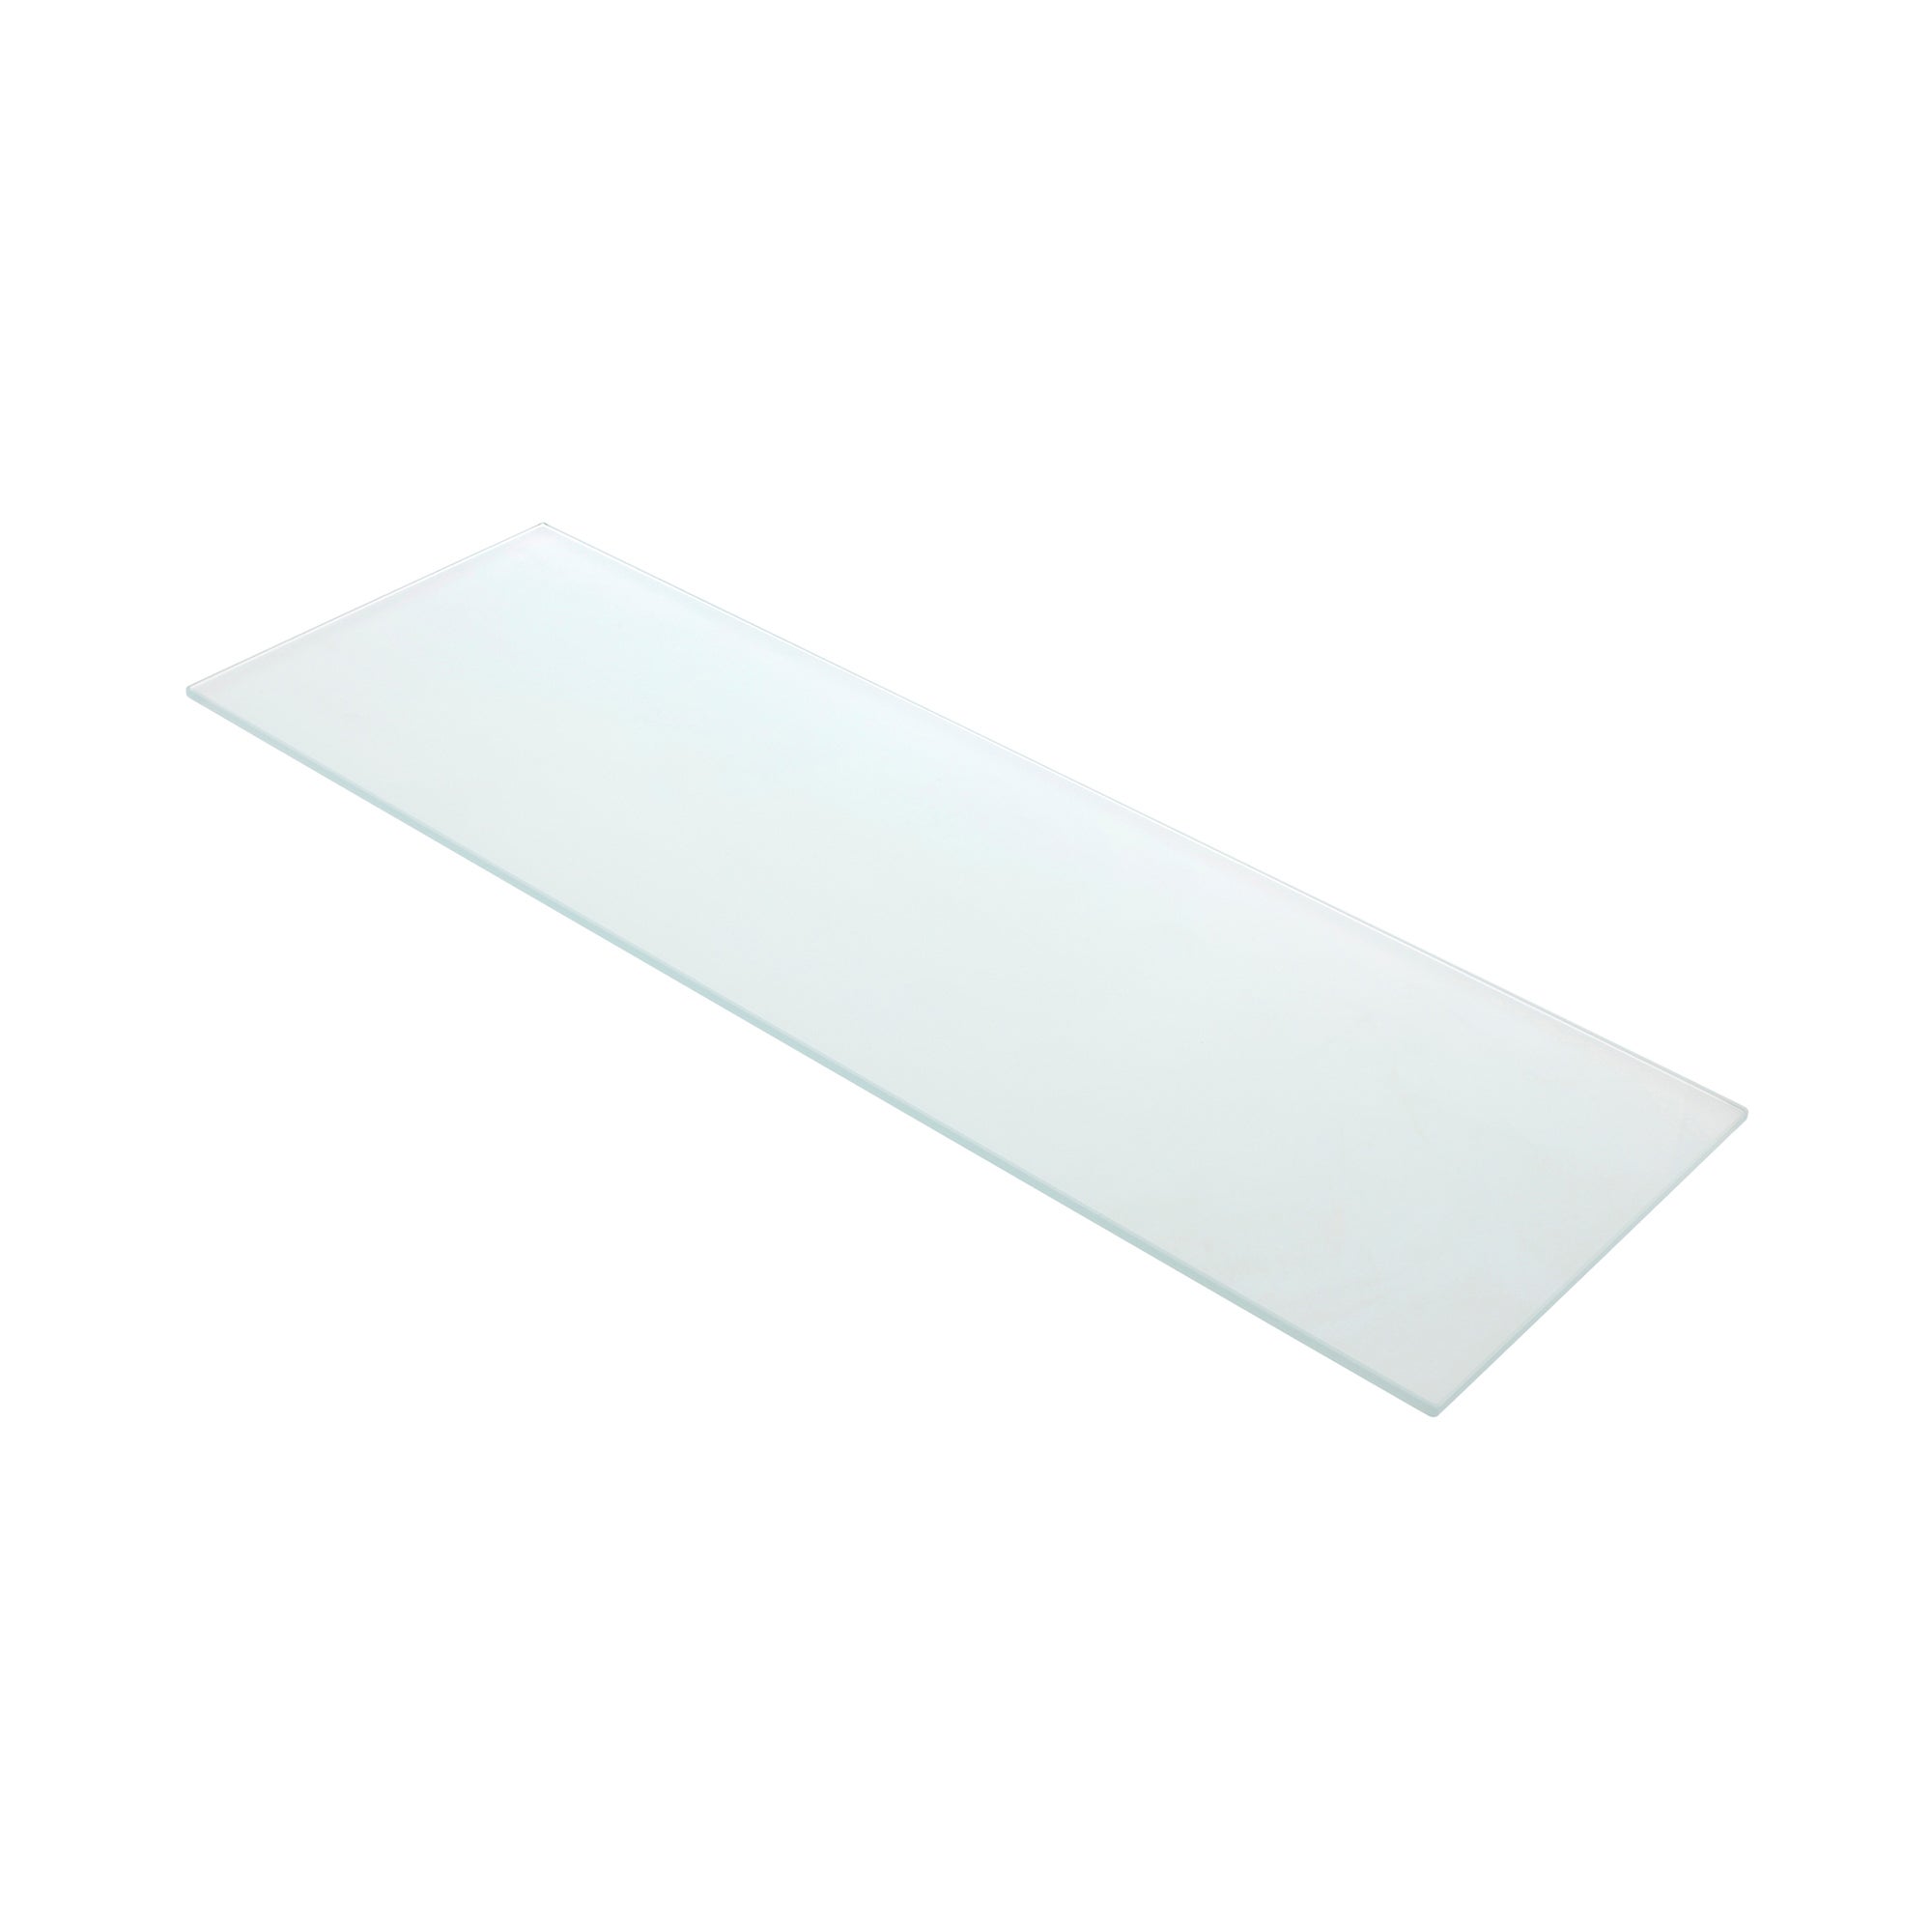 Estante de Cristal Rectangular - Ideal para Baño - Medidas 400x6x150 mm -  Espesor de la Balda: 6 mm - Acabado Transparente - 1 Unidad